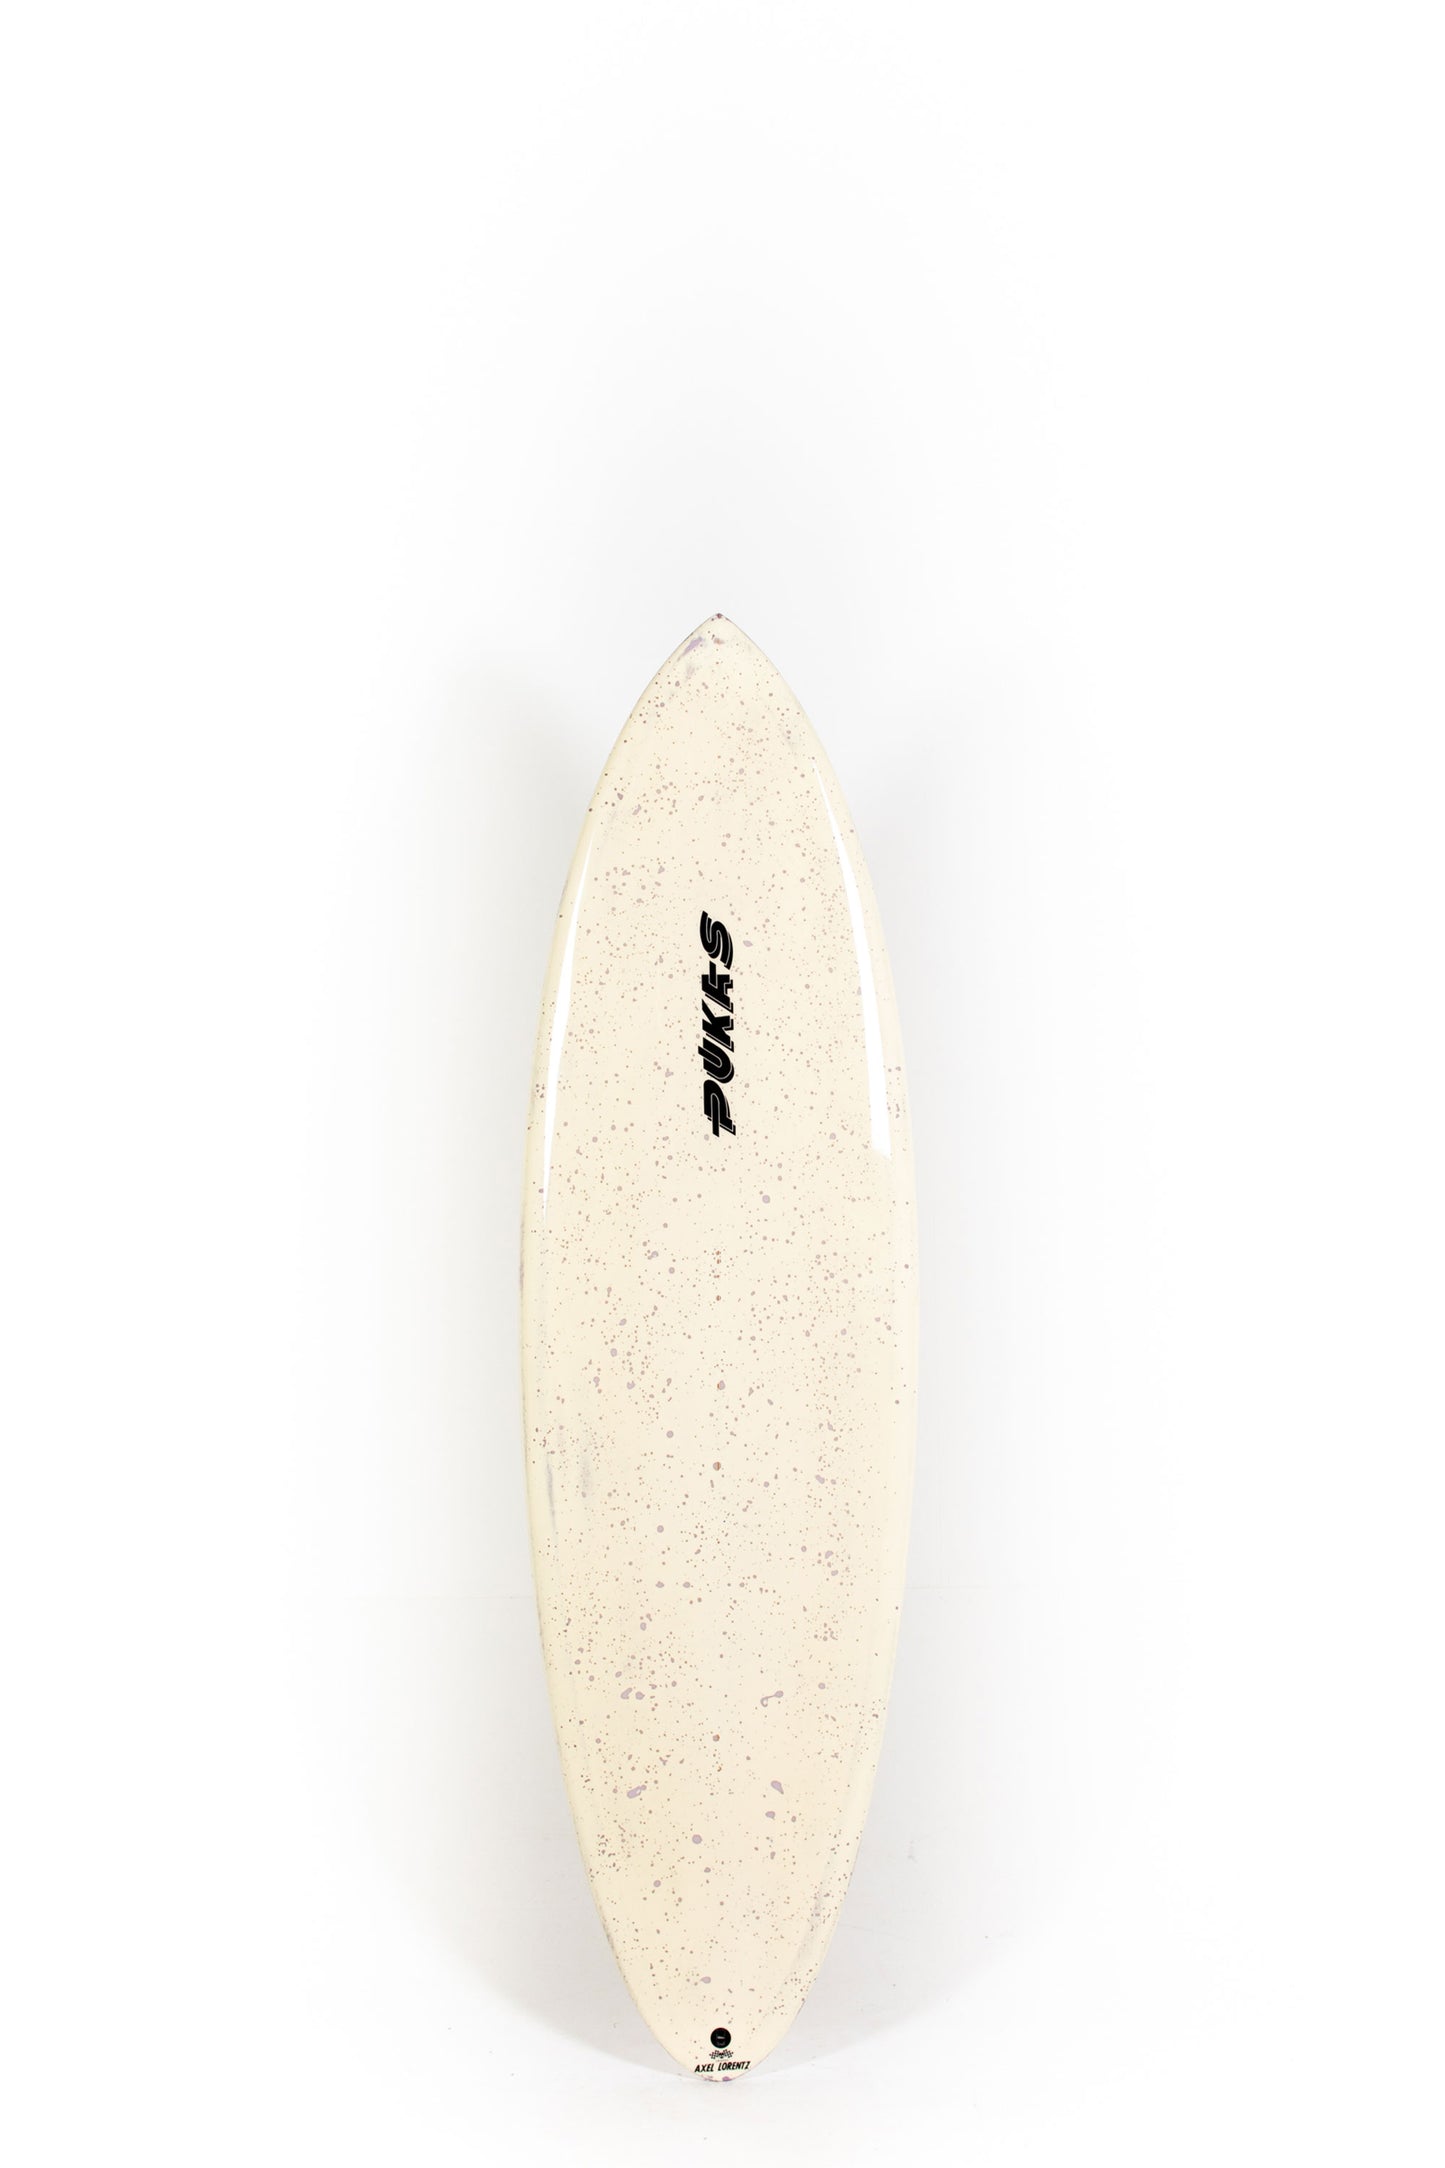 Pukas Surf Shop - Pukas Surfboard - 69ER PRO by Axel Lorentz - 6’4” x 21,5 x 2,87 - 41,77L - AX09505